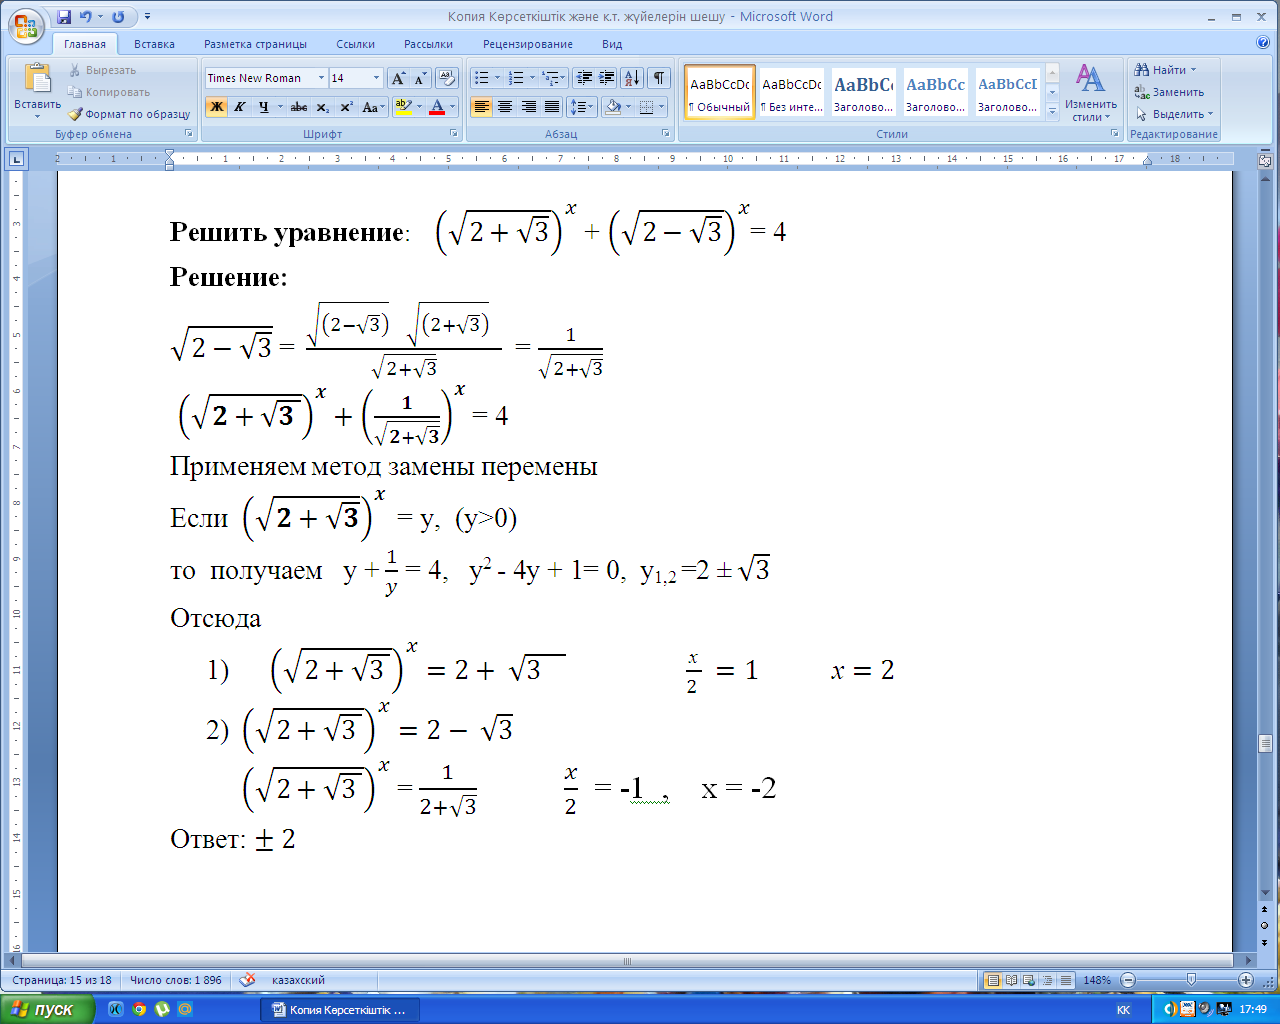 Конспект к уроку Показательные уравнения и системы уравнении (11 класс)